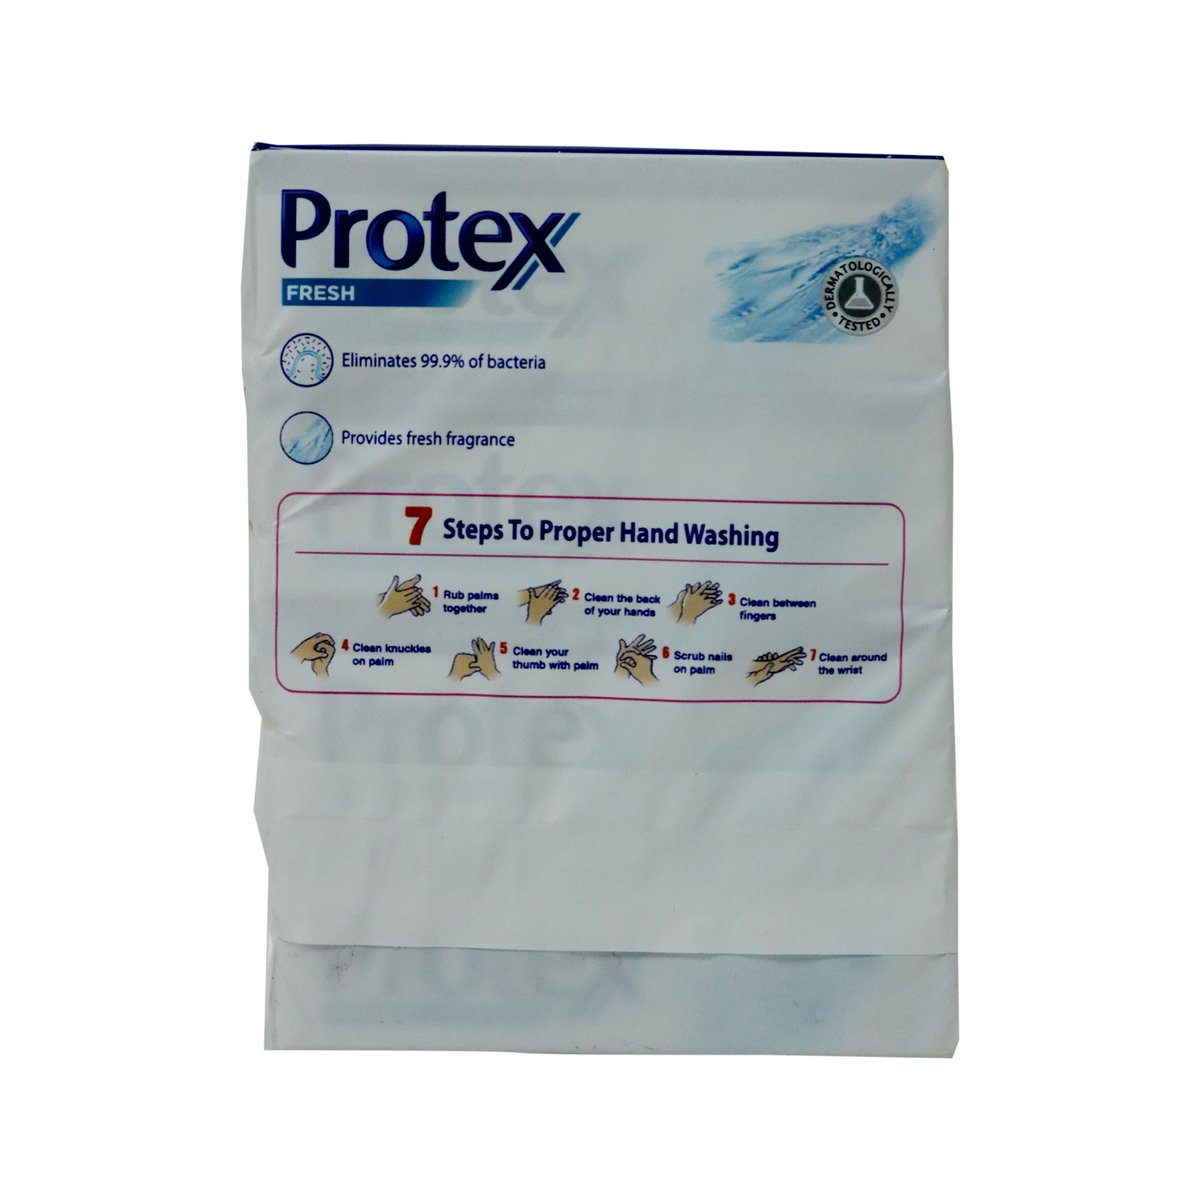 Protex Bath Soap Fresh Buy 3 Free1 75g